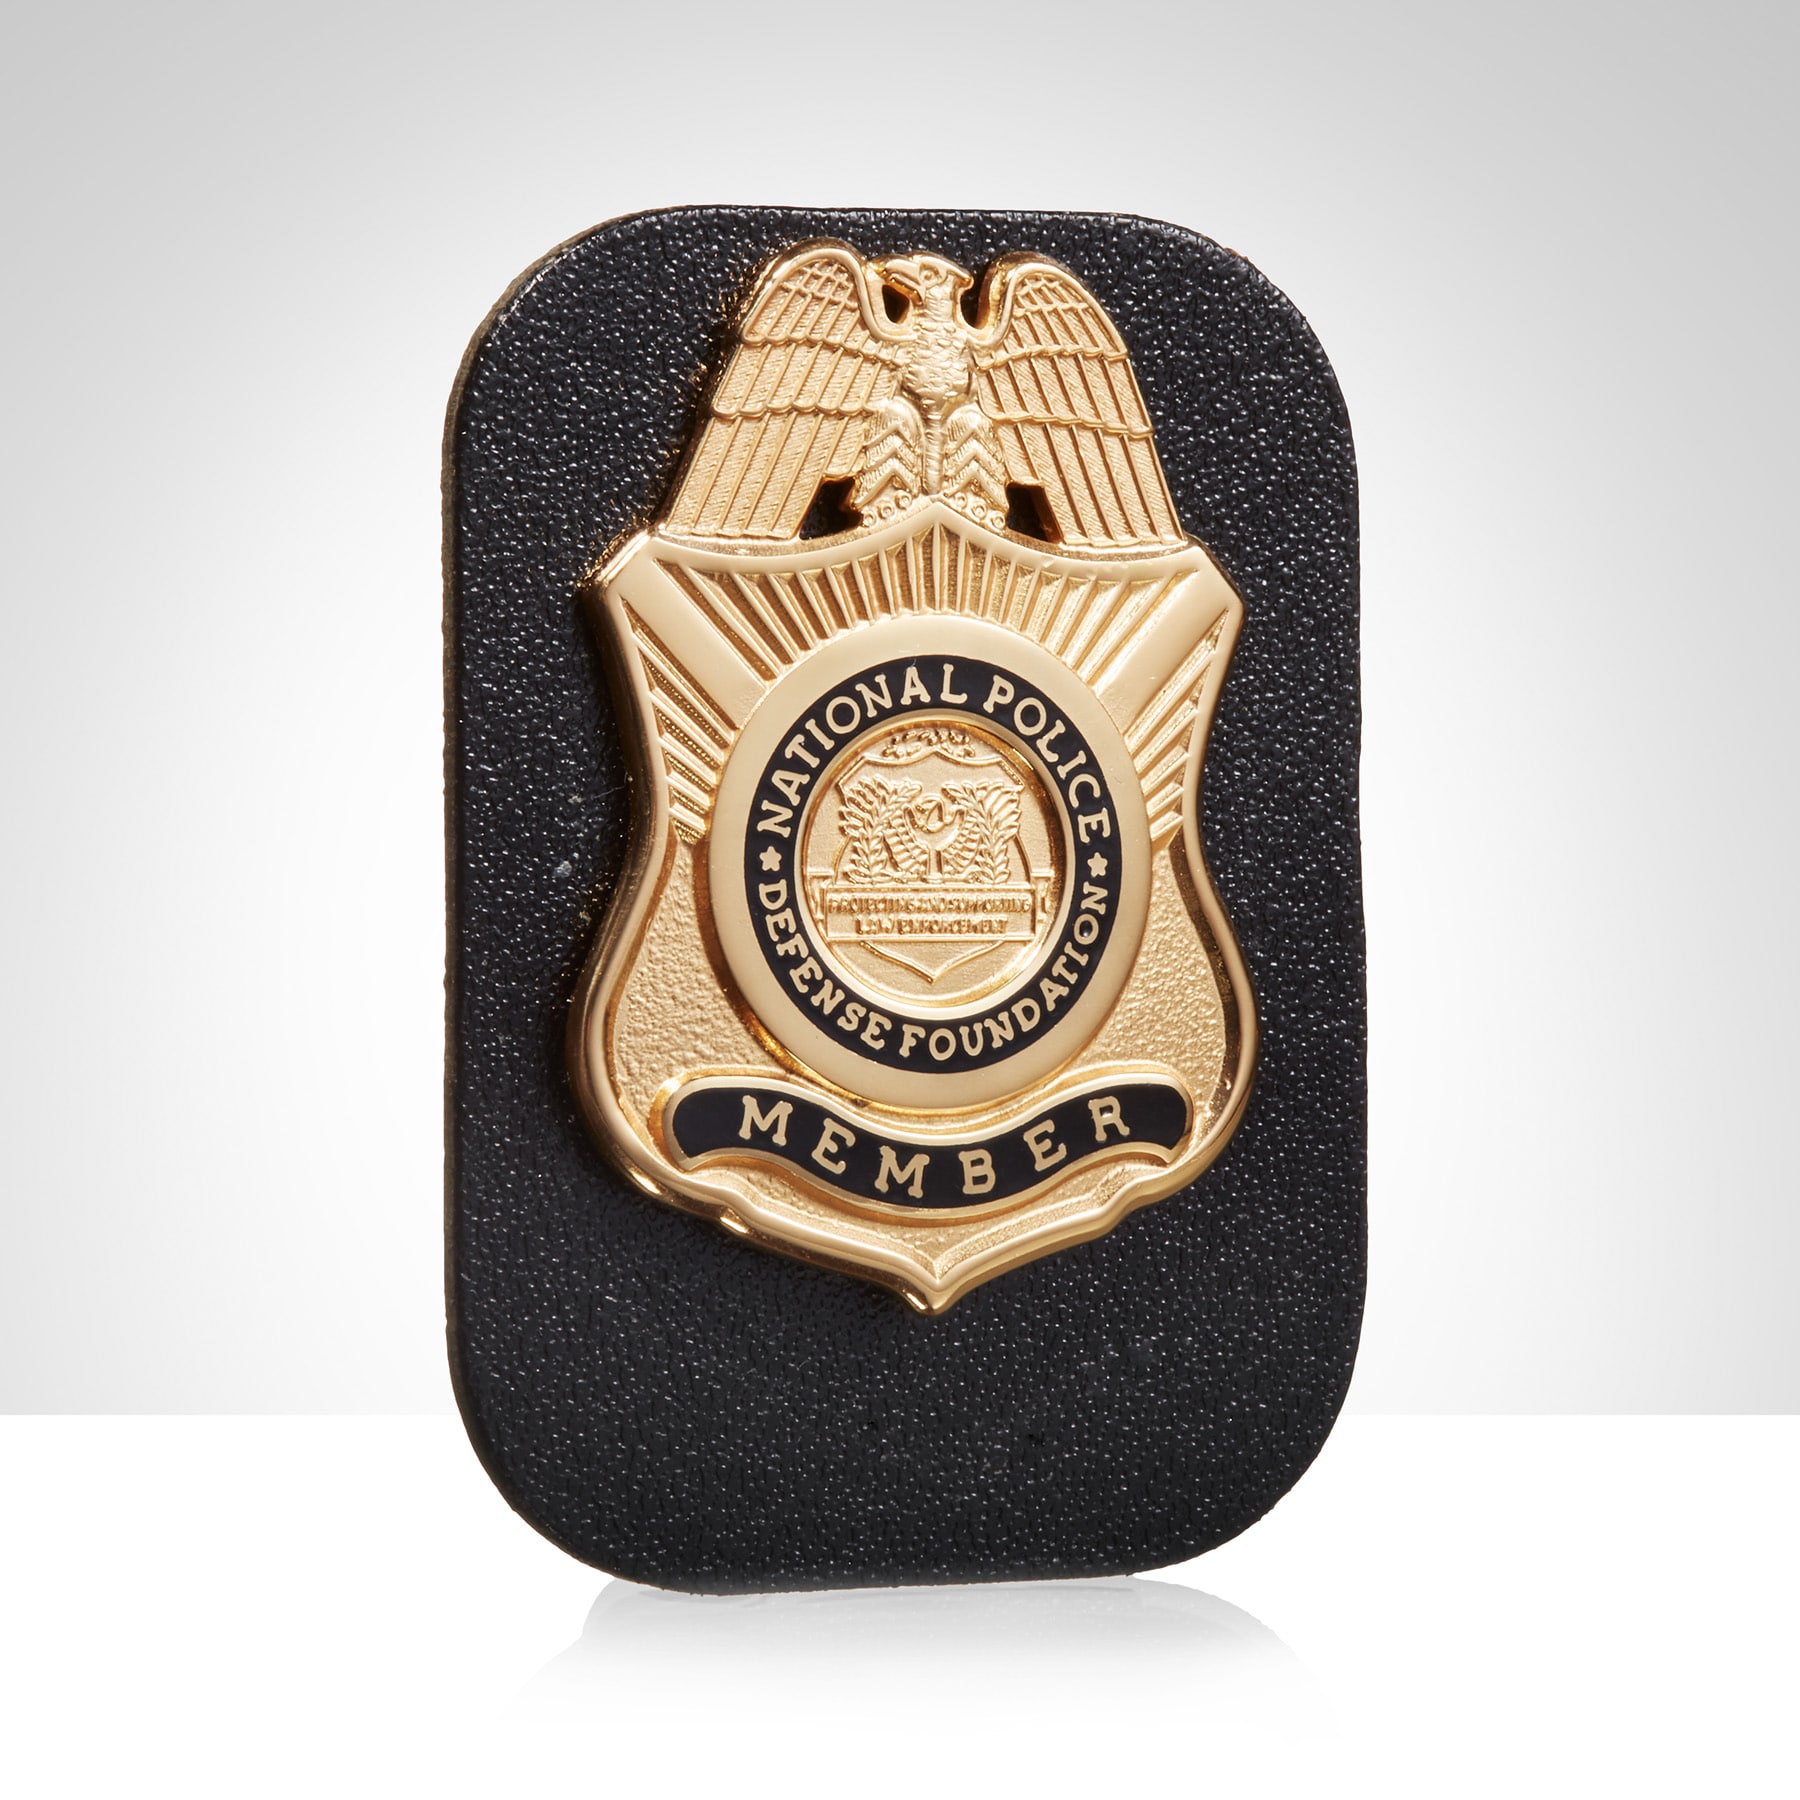 National Police Defense Foundation Member Badge